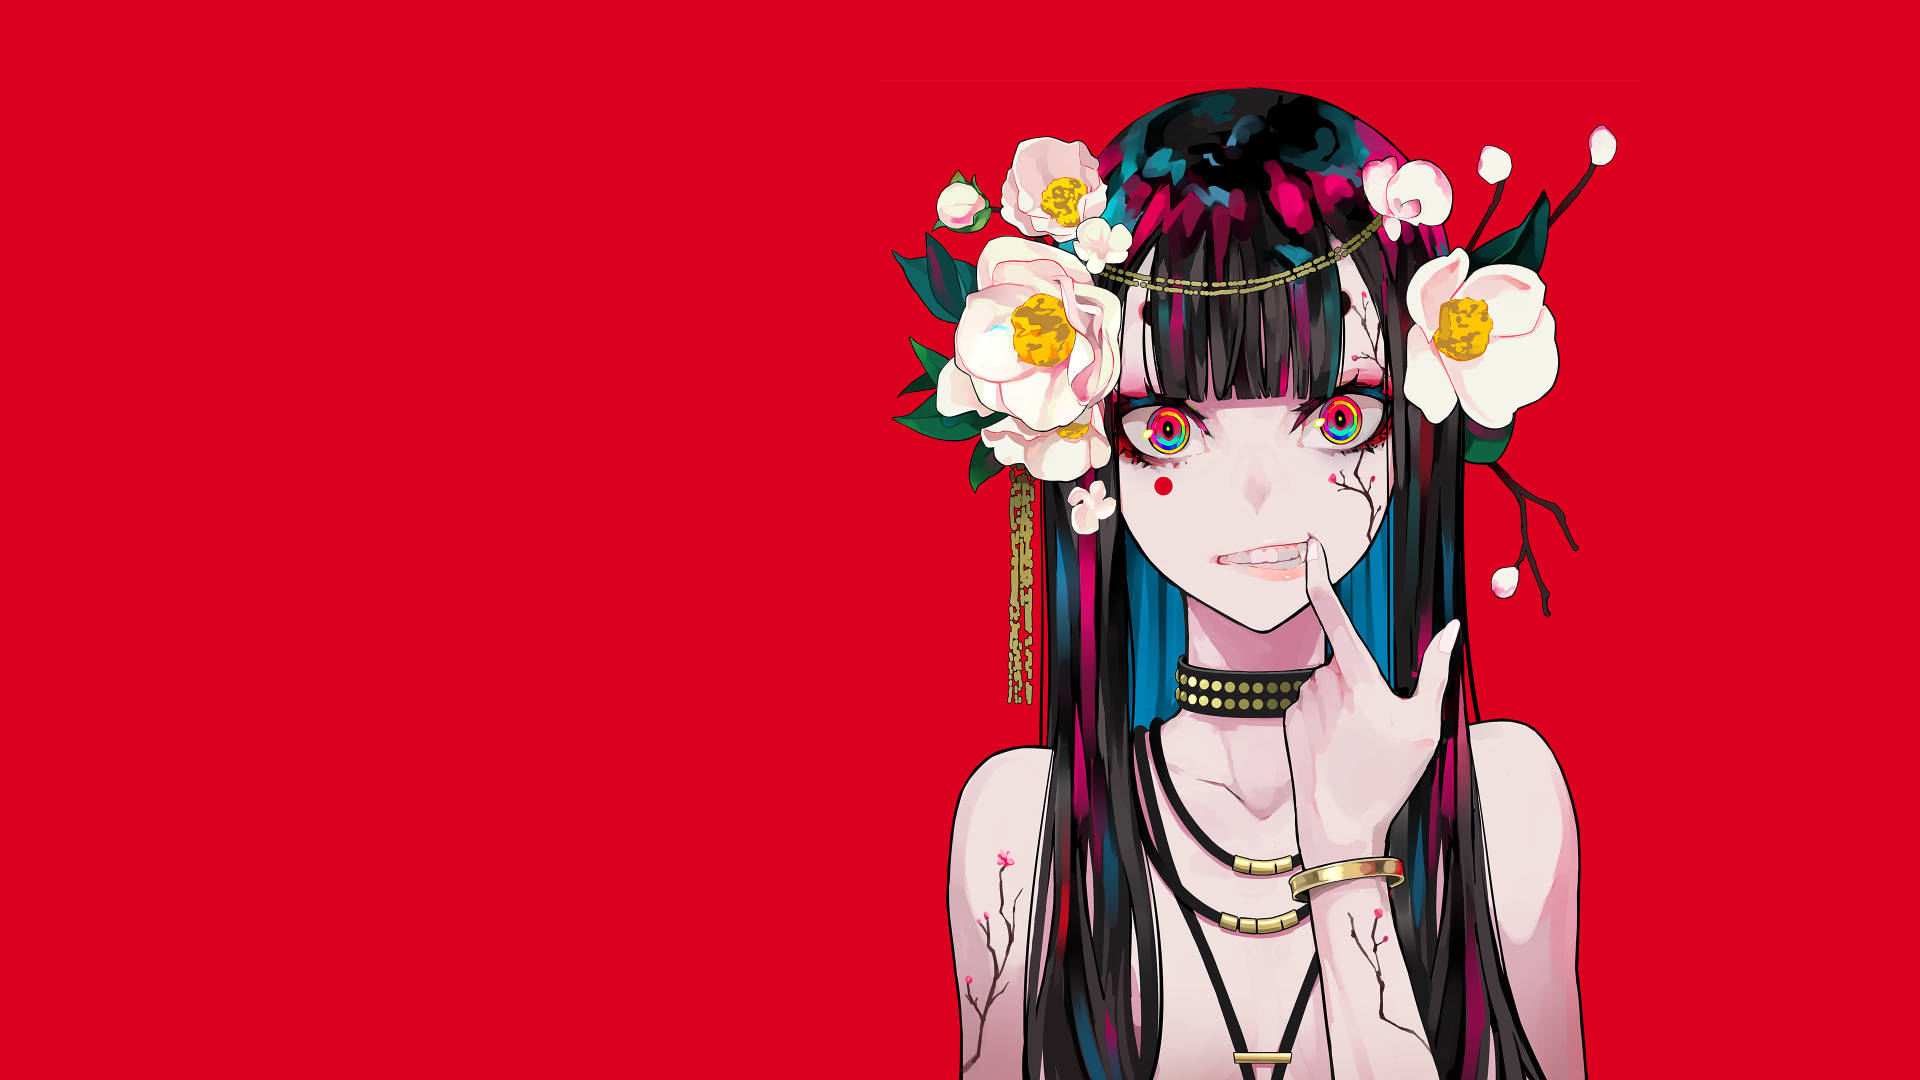 Flower PC On Anime Girl Wallpaper